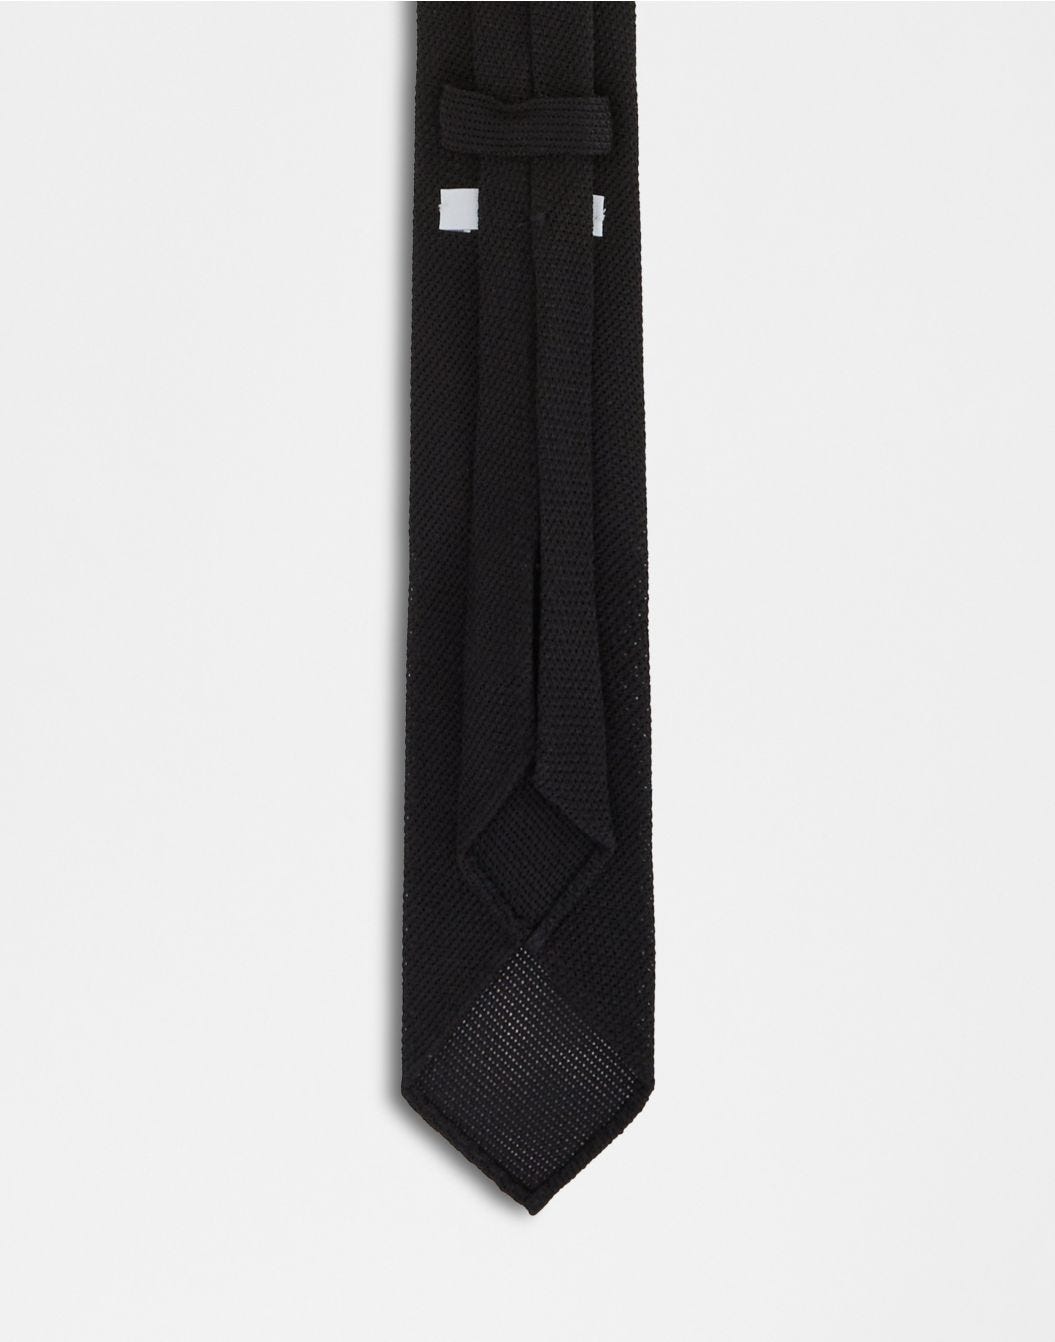 Cravatta in garza fine di seta nera